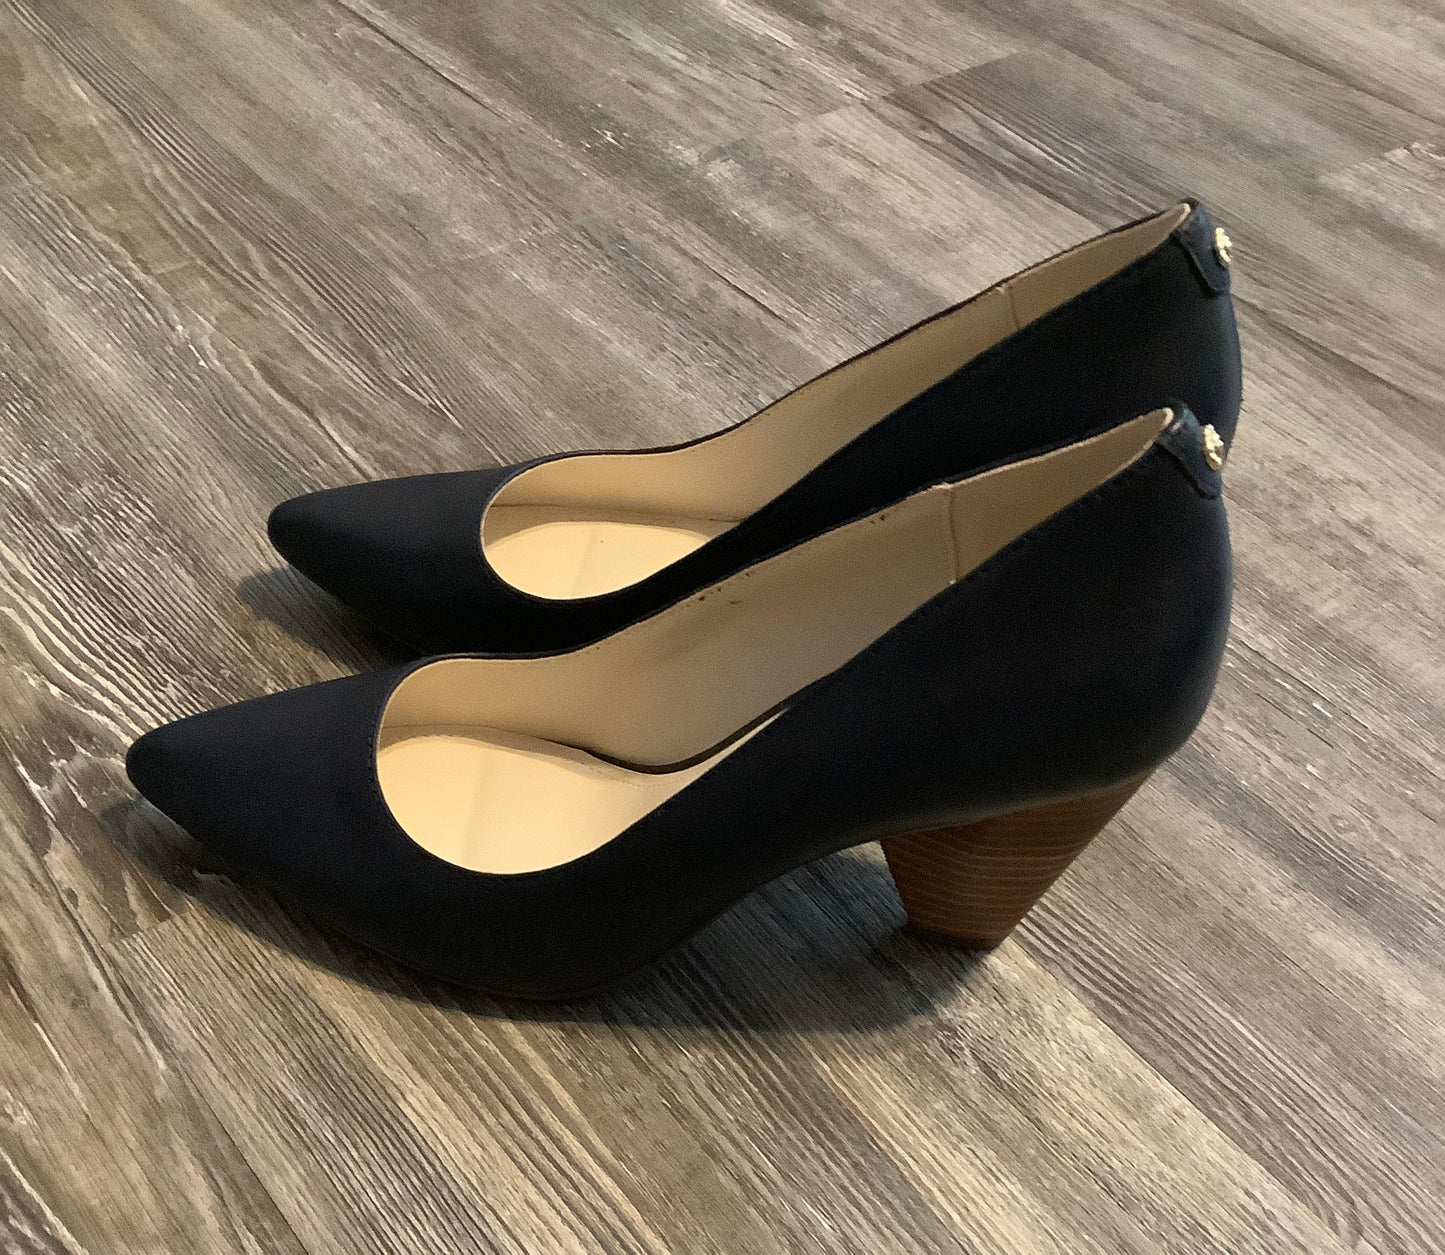 Shoes Heels Kitten By Anne Klein  Size: 6.5